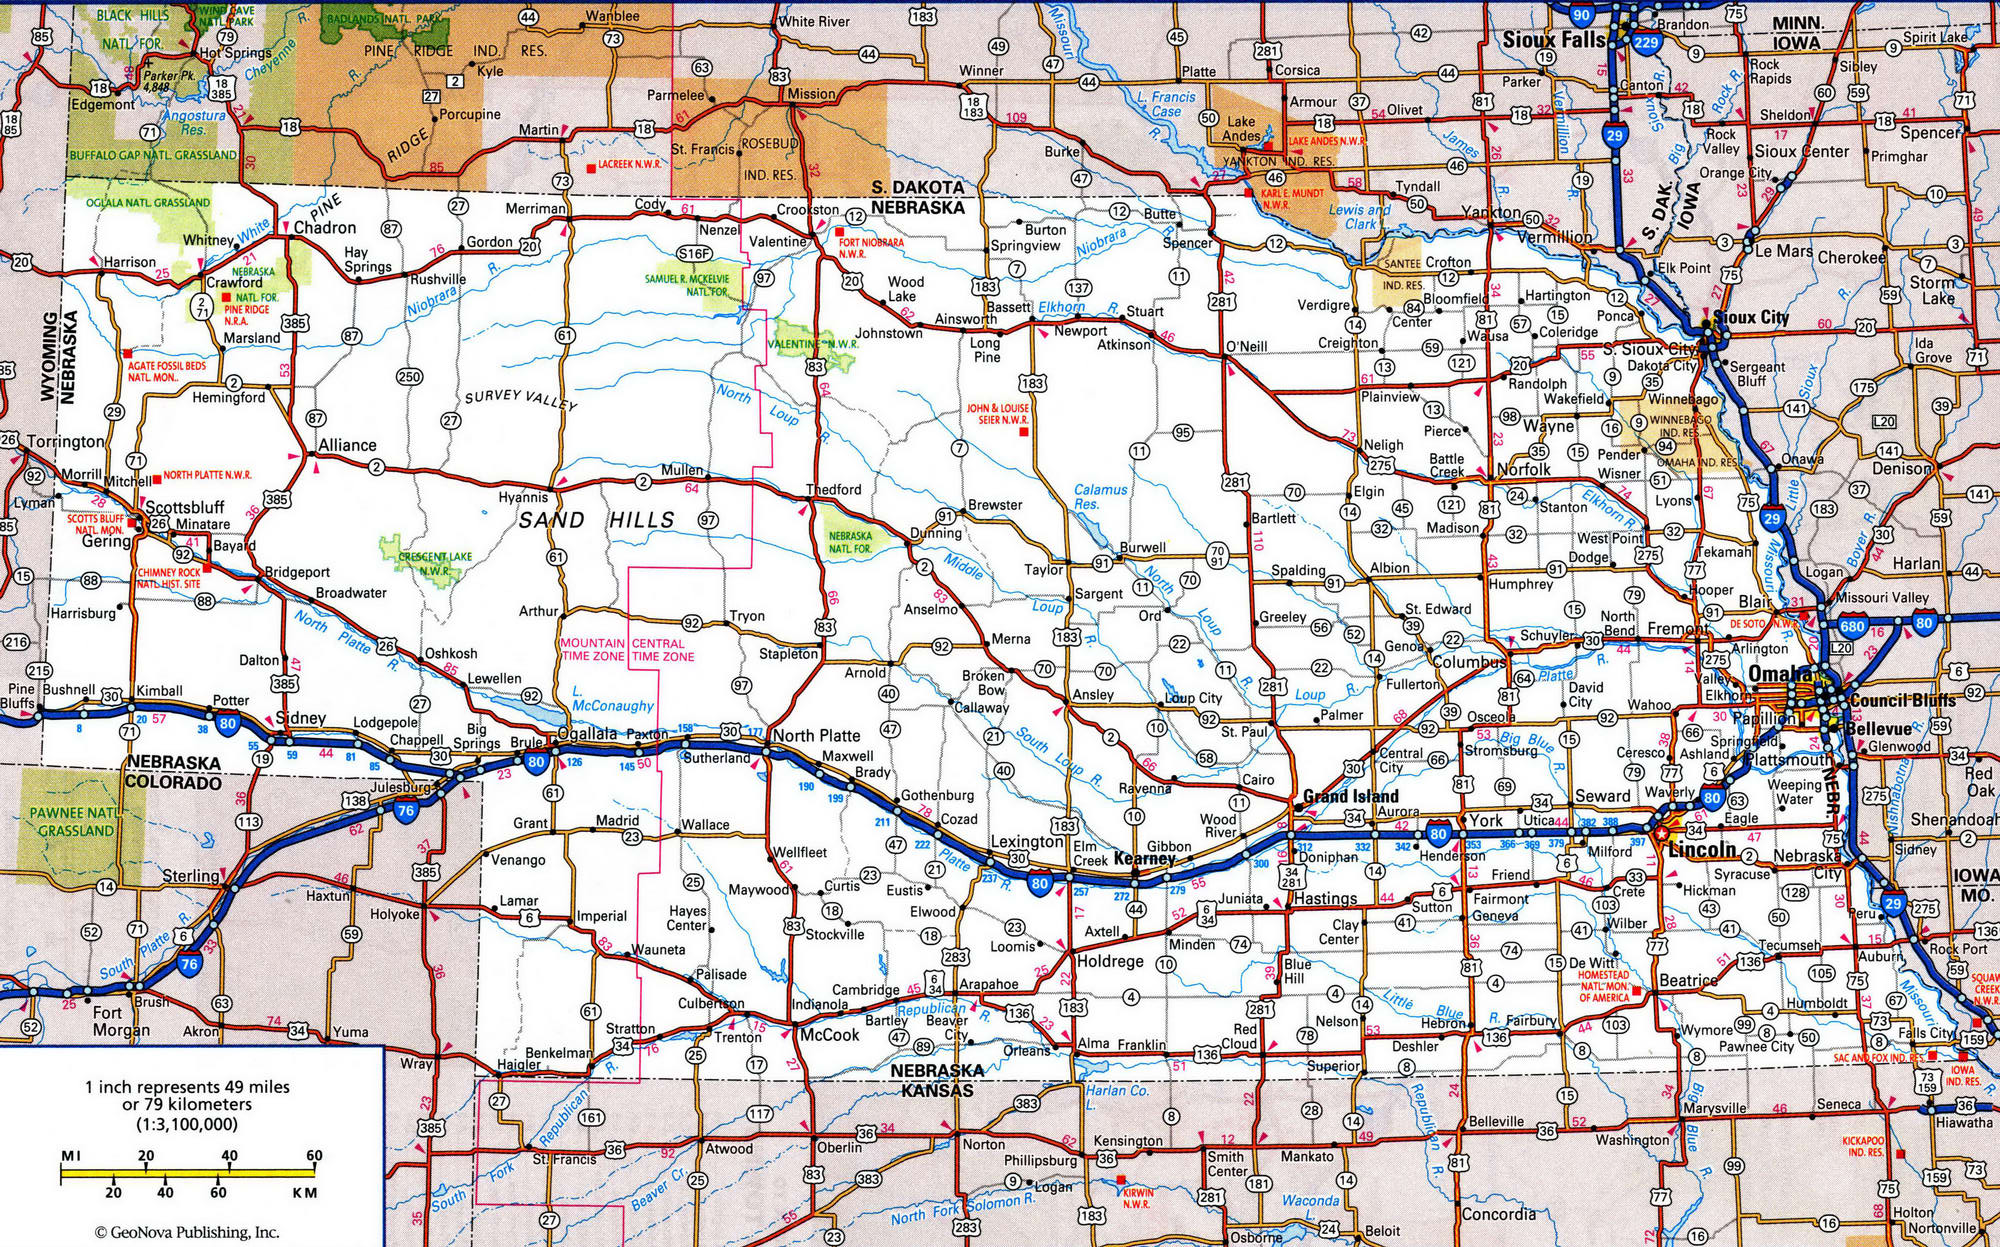 Detailed roads map of Nebraska